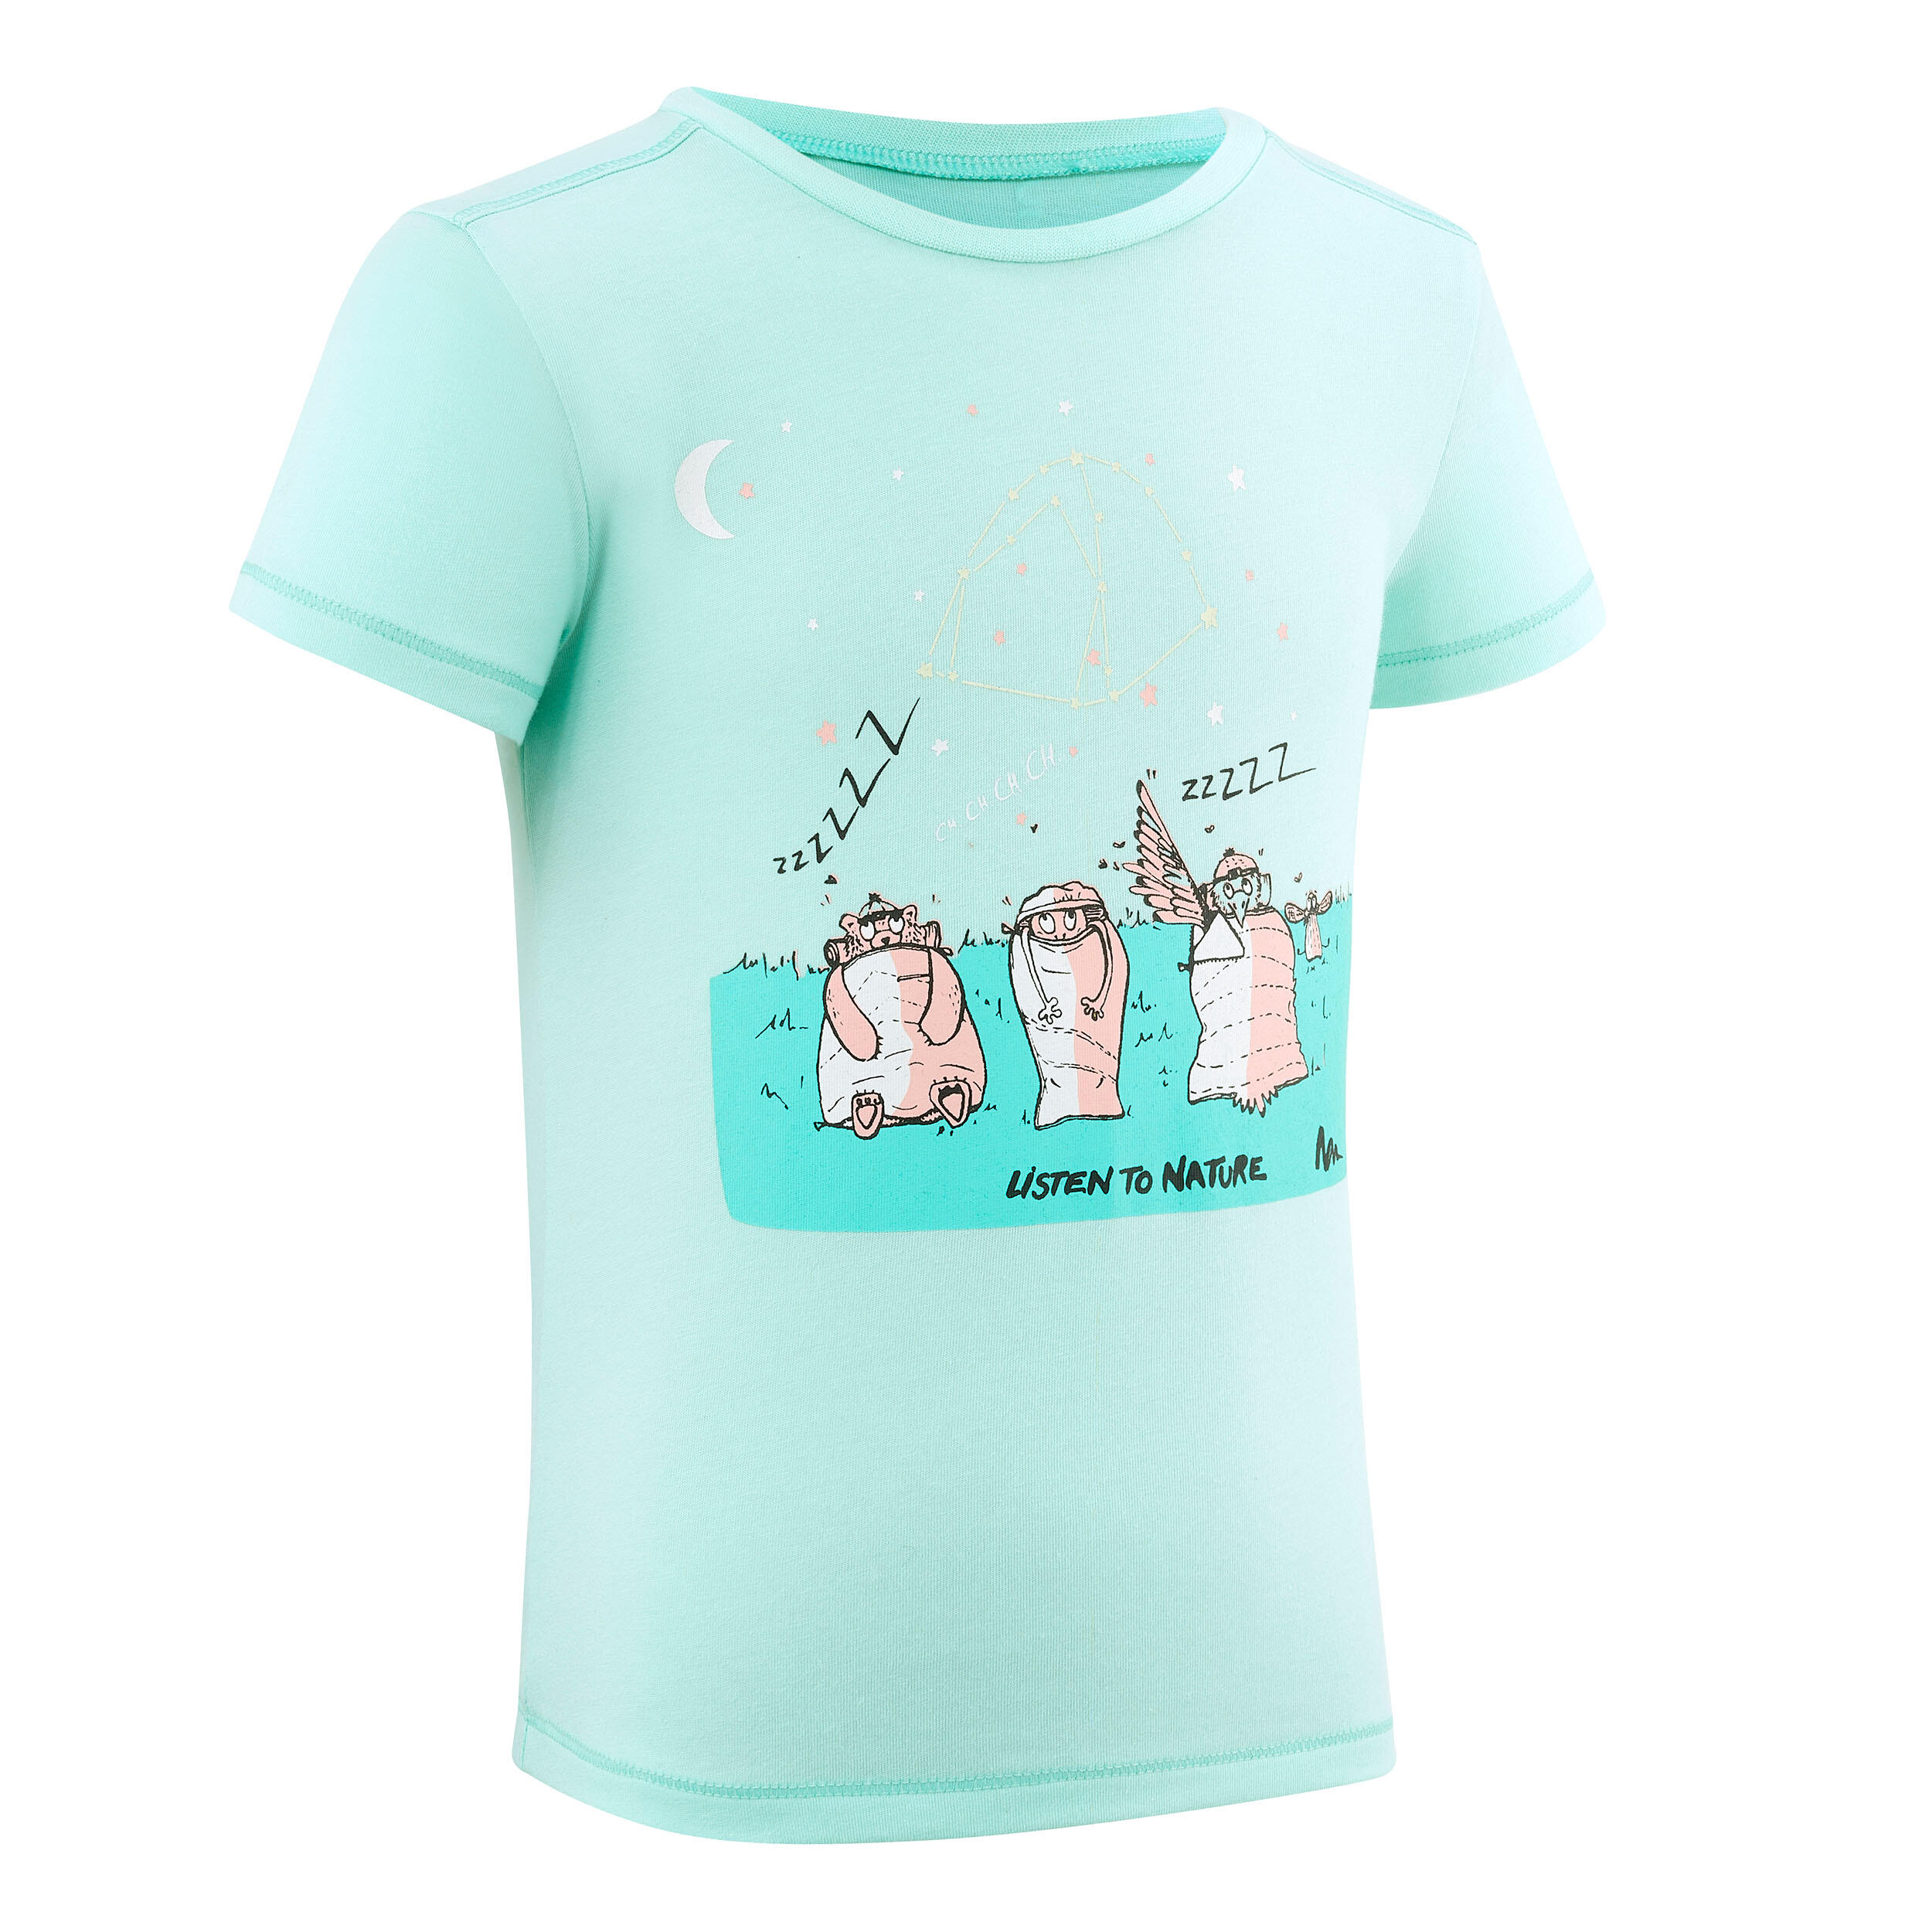 DE 116 Mädchen Bekleidung Shirts & Tops T-Shirts Vingino Mädchen T-Shirt Gr 